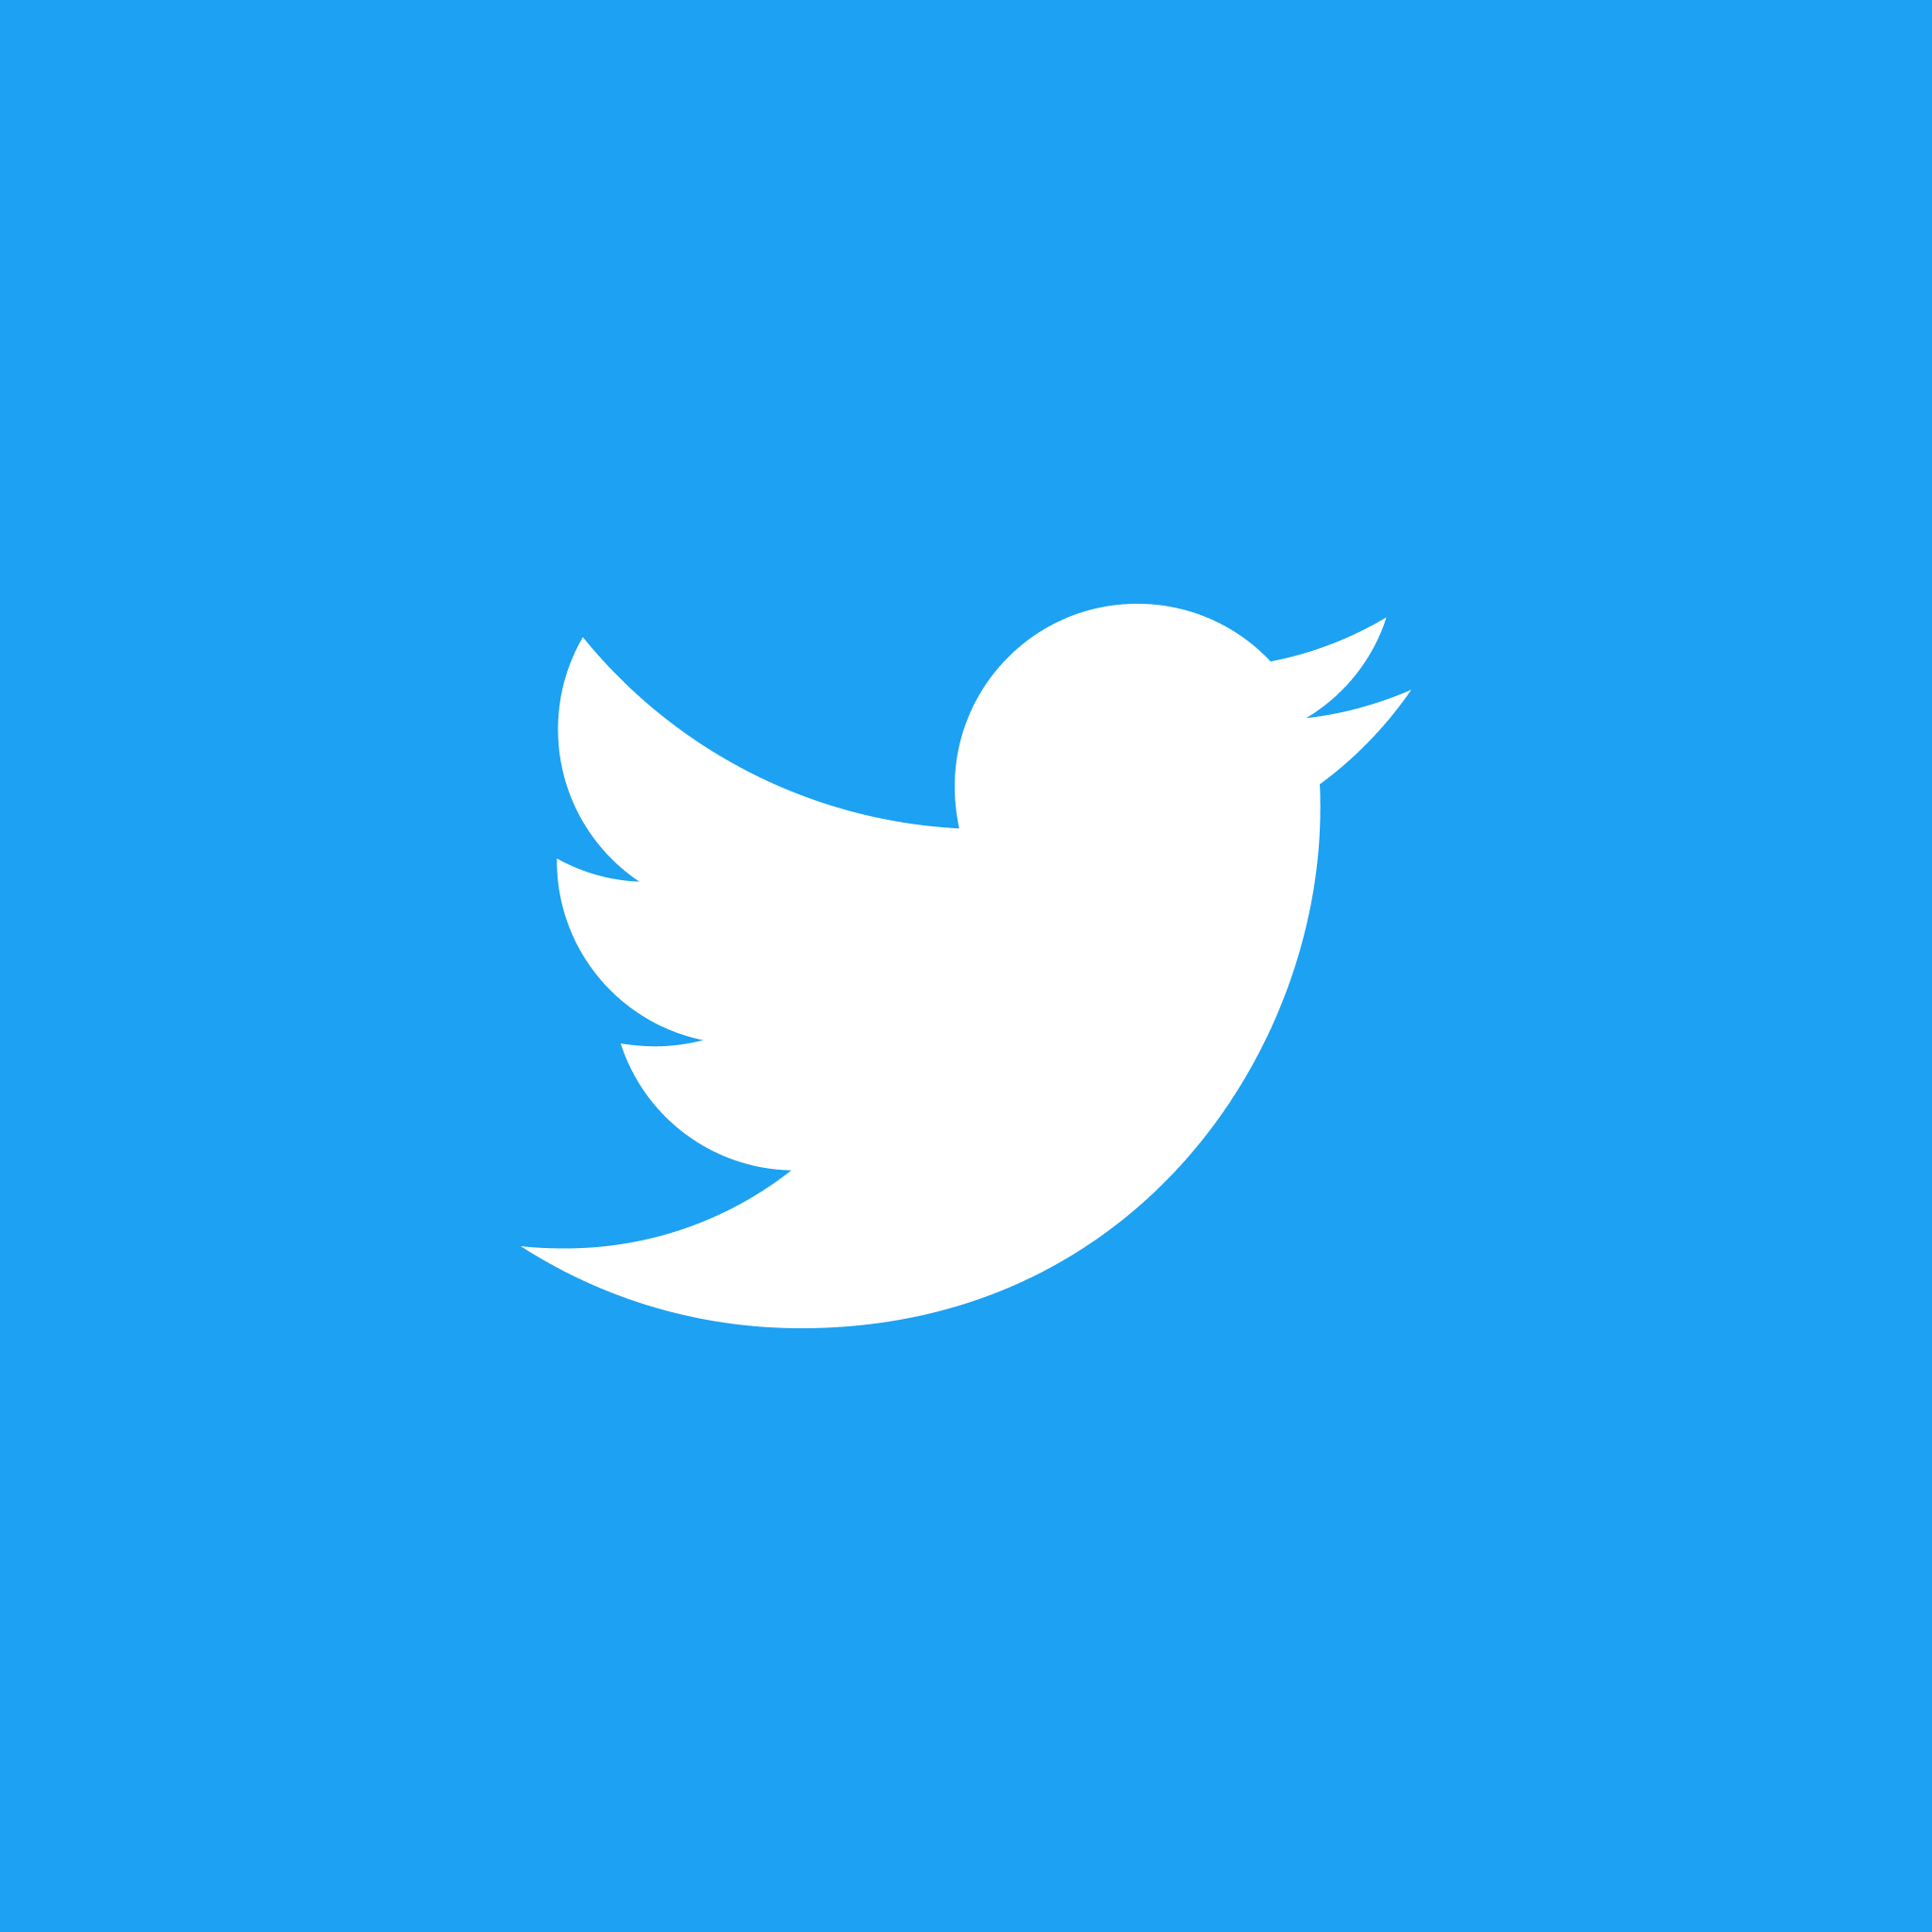 Imagen n.° 1 de Cómo cambiar el ícono de Twitter de la marca 'X' a Blue Bird